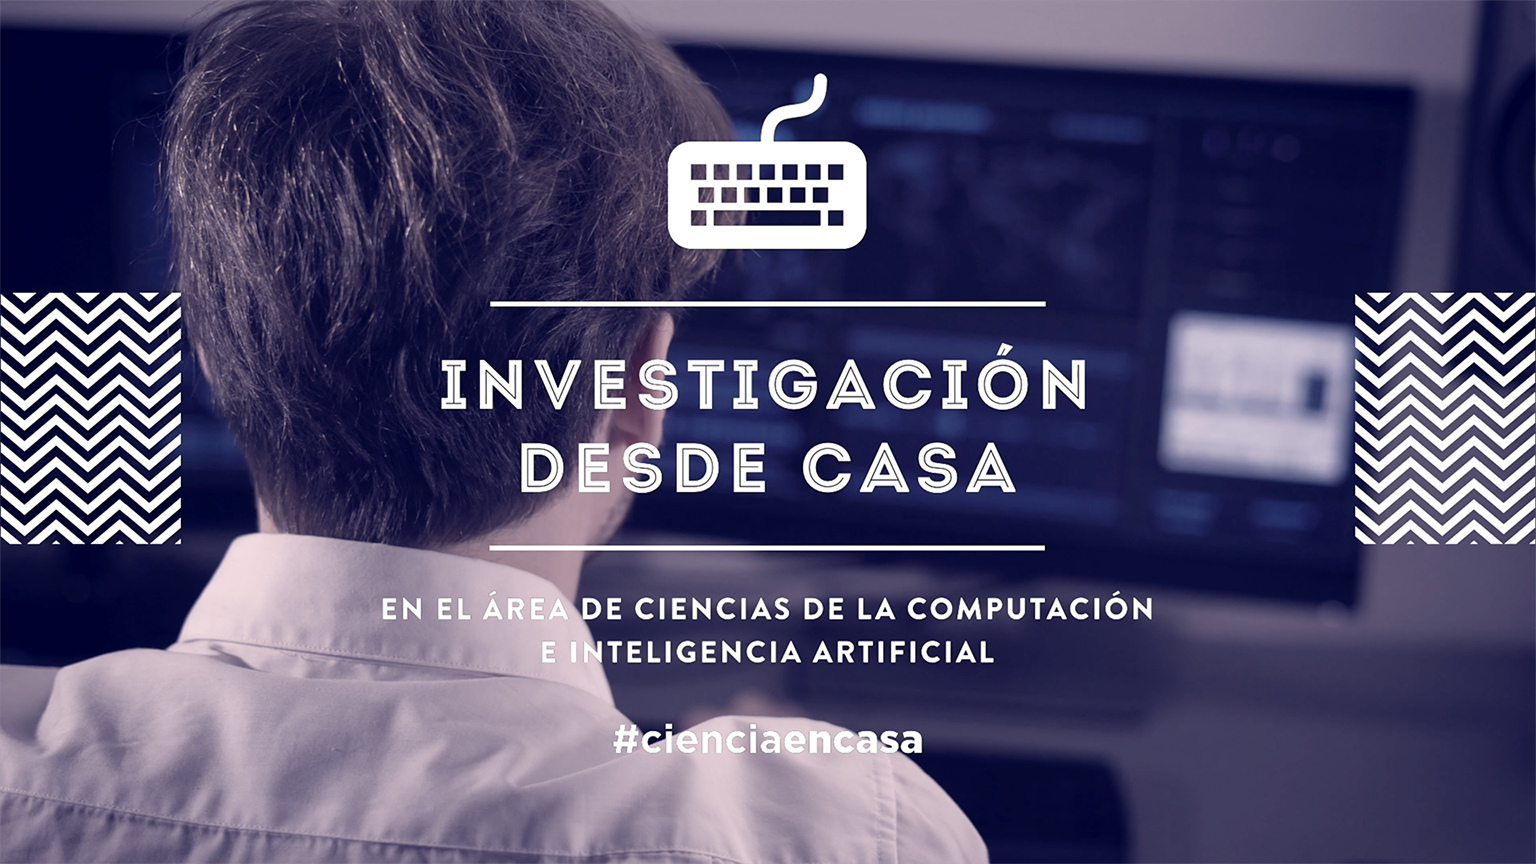 #CienciaEnCasa: “Investigación desde casa en el área de Ciencias de la Computación e Inteligencia Artificial”, por Jesús Alcalá